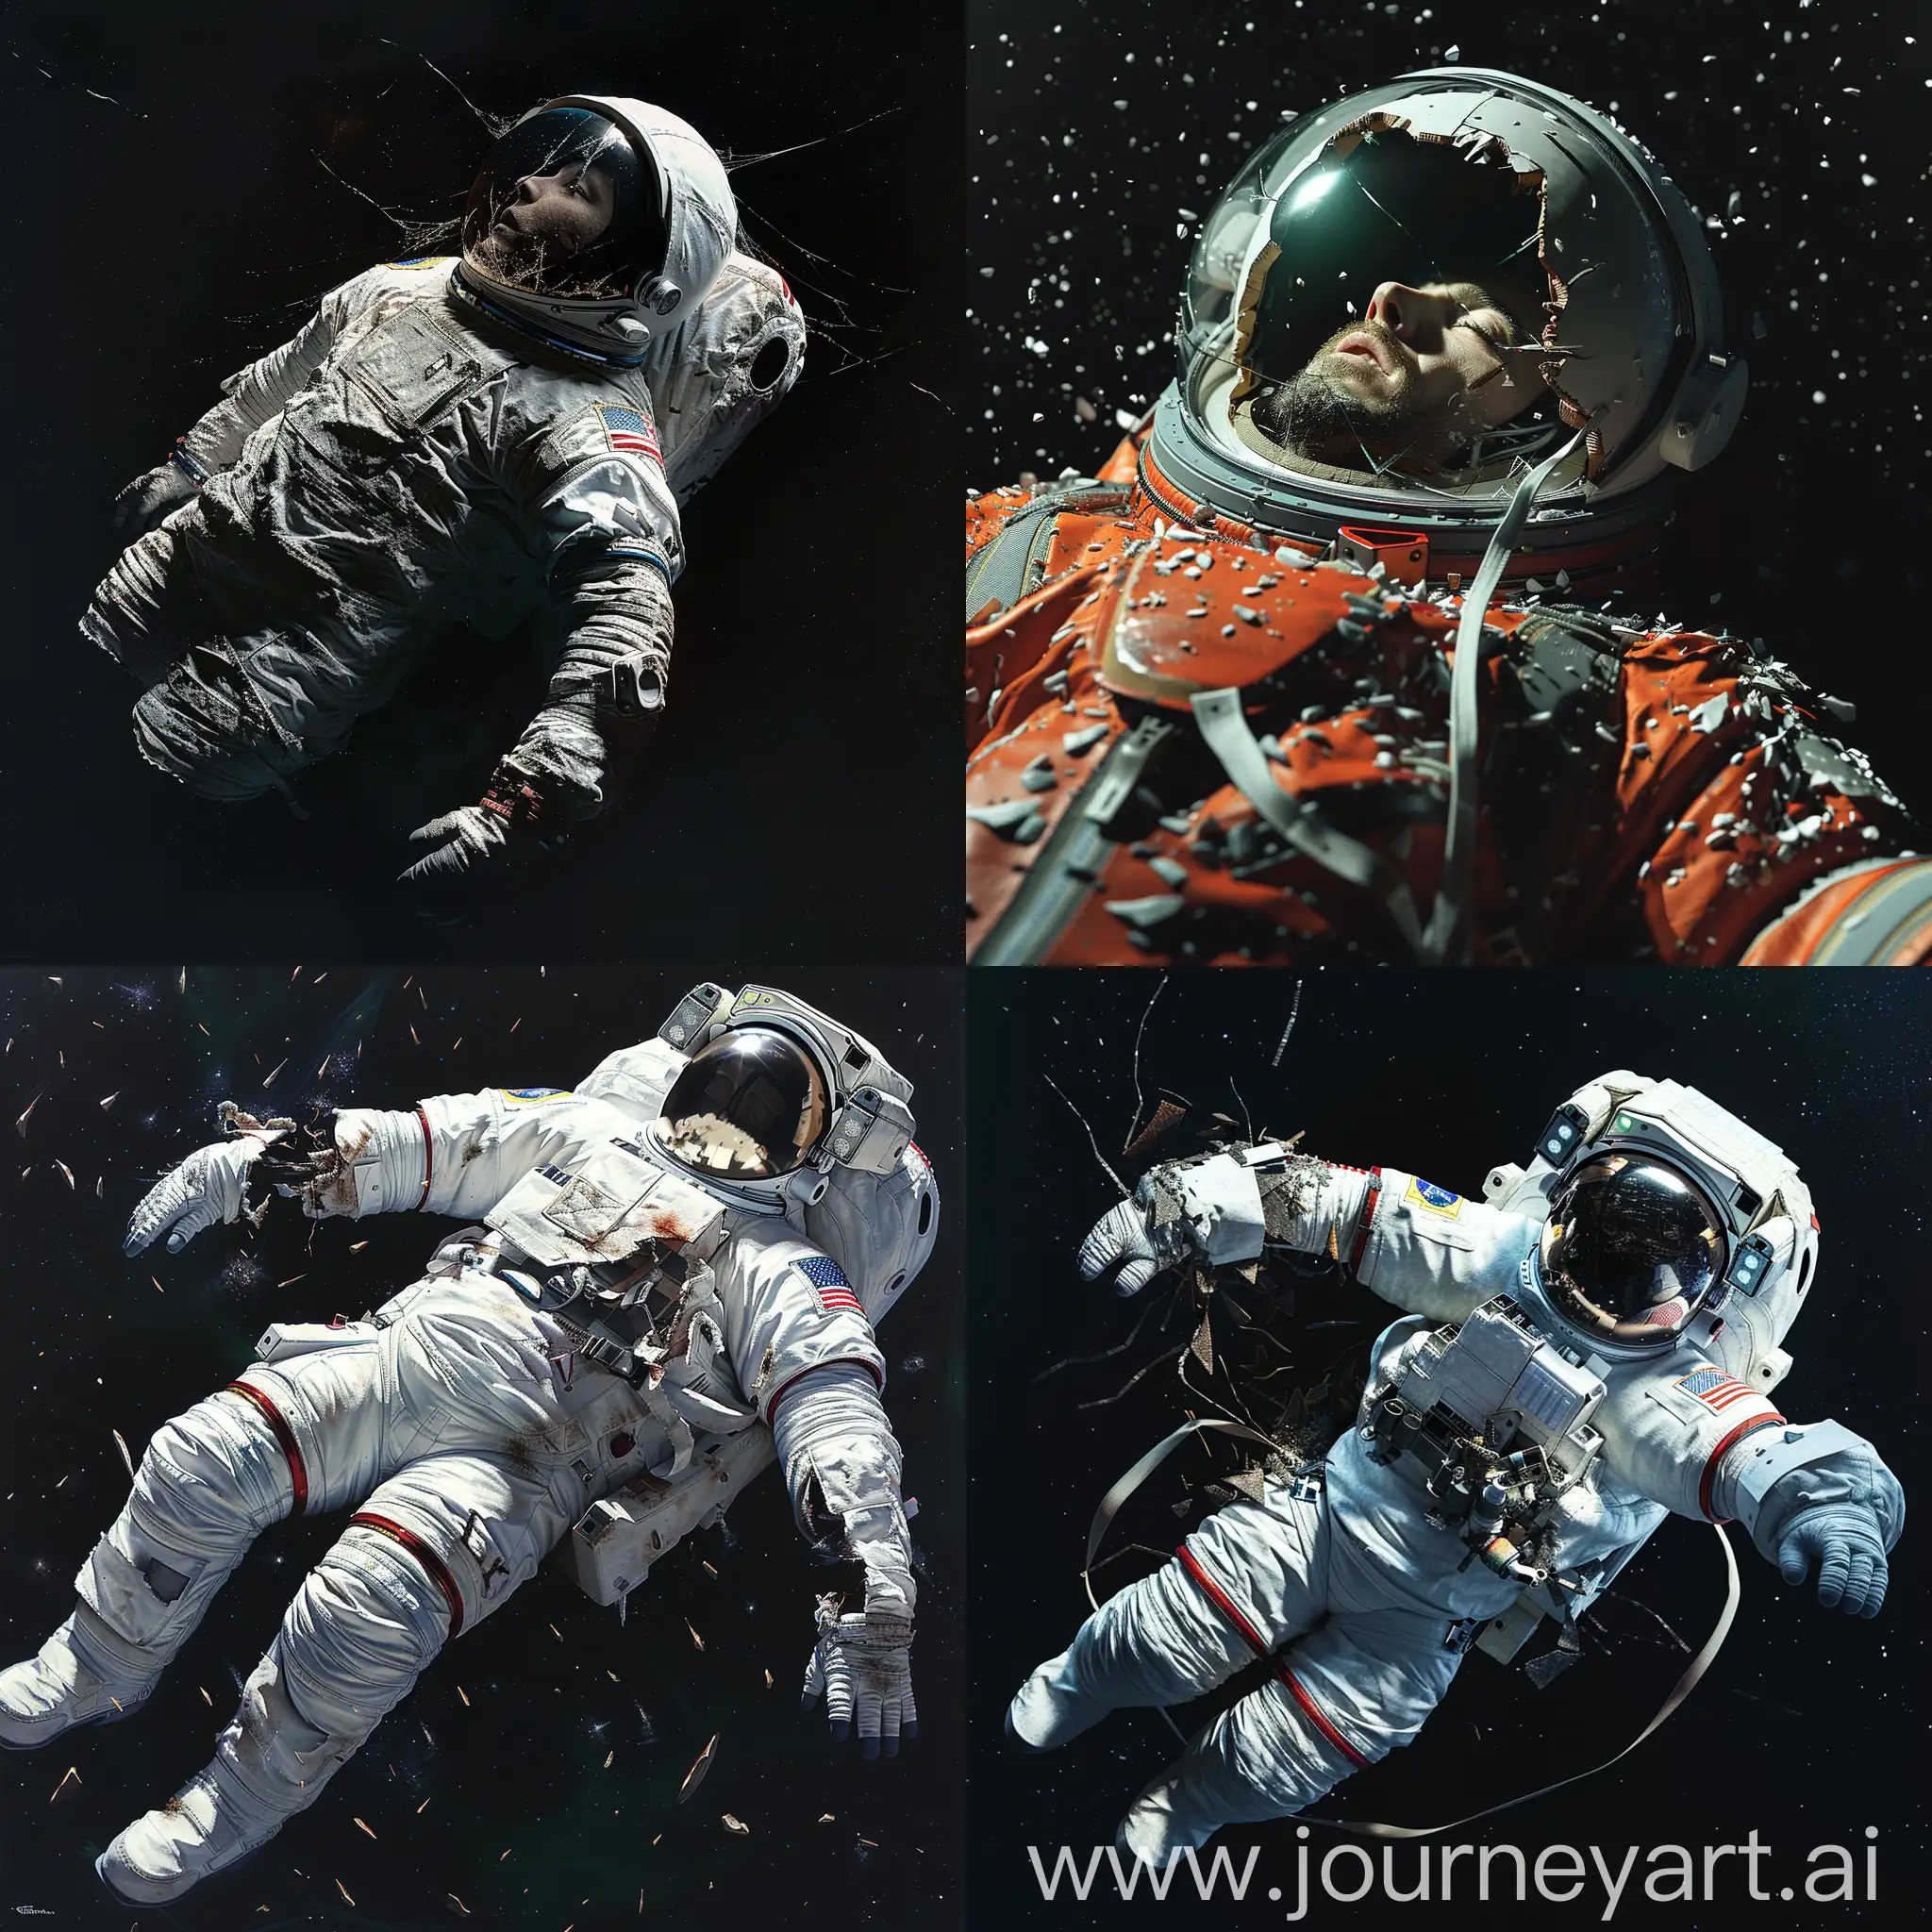 一个宇航员的尸体在太空中缓缓漂浮，他的太空服已经破损，头盔裂开，露出一张平静的面孔